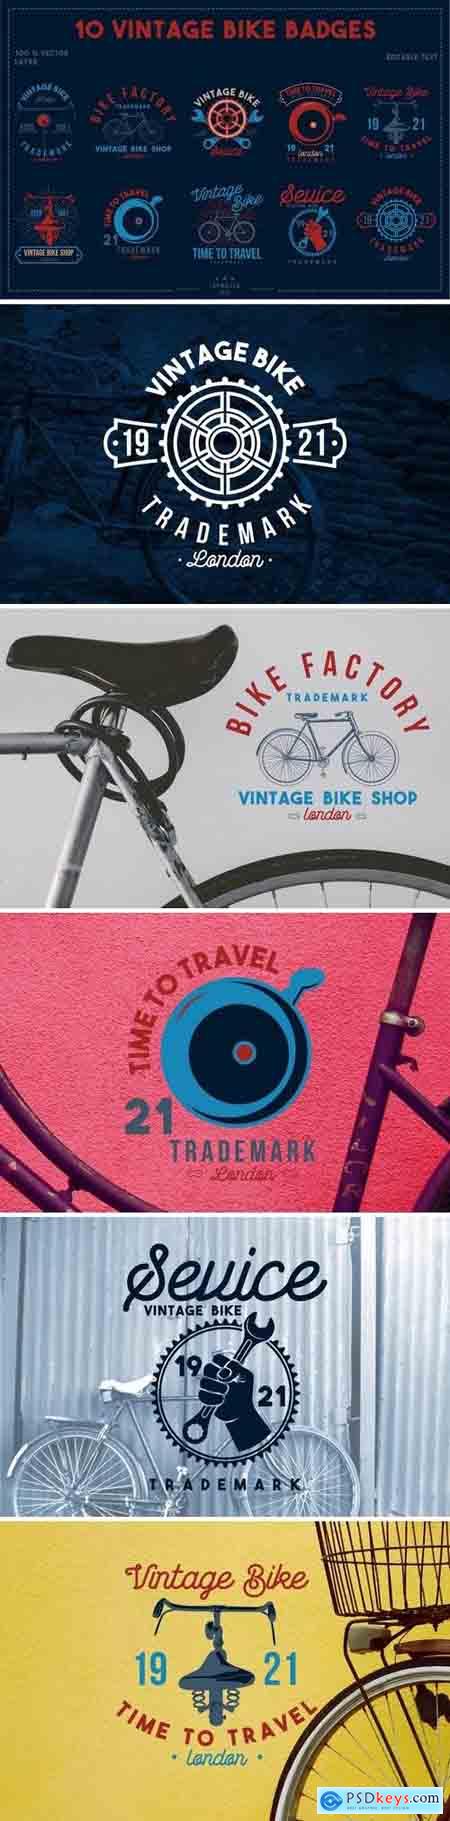 10 Vintage Bike Badges